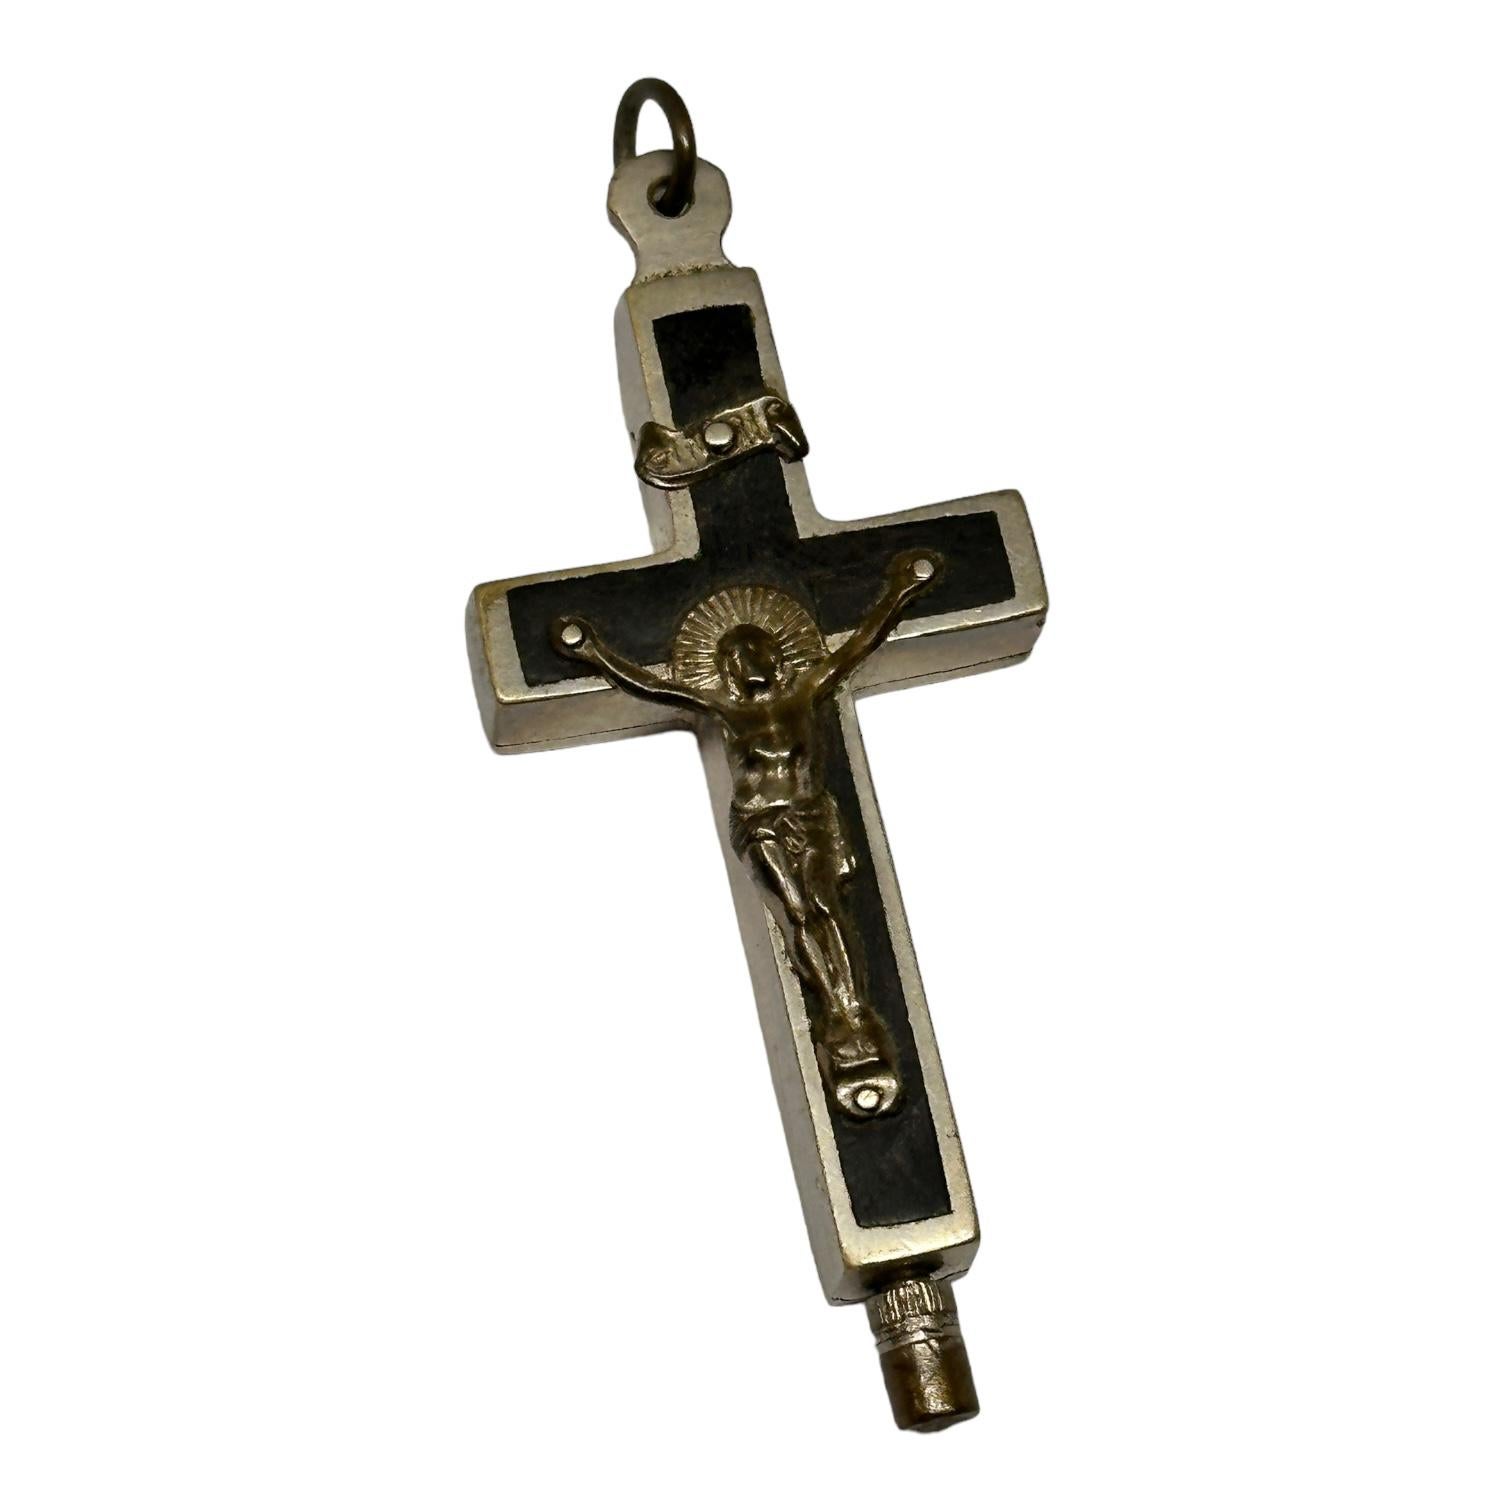 Art Nouveau small Antique Catholic Reliquary Box Crucifix Pendant with Relics of Saints For Sale